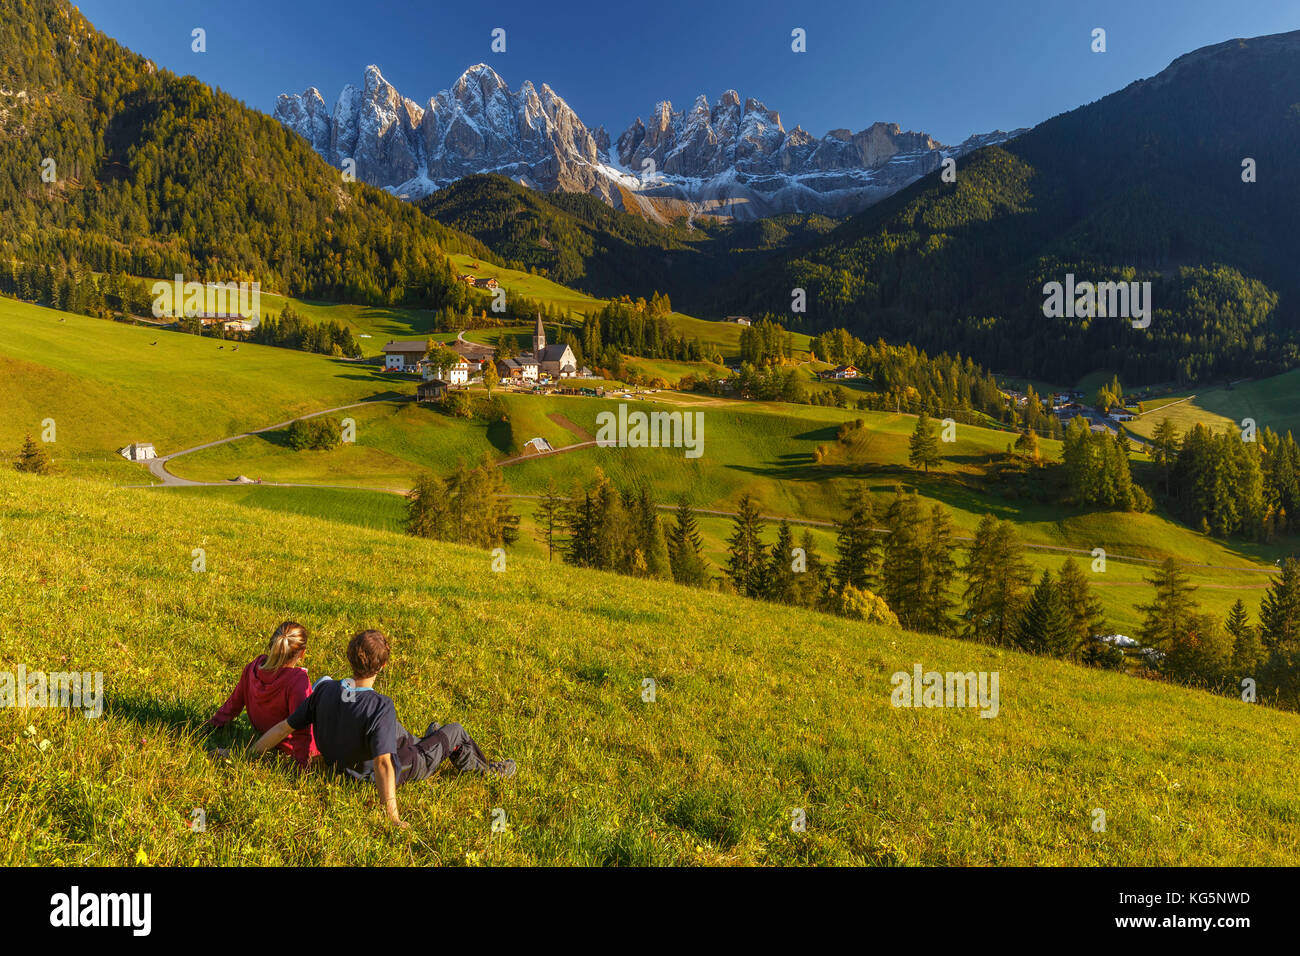 Deux frères admirent le village de Santa Magdalena, la vallée de Funes, les dolomites d'Odle, la région du Tyrol du Sud, le Trentin-Haut-Adige, province de Bolzano, Italie, Europe Banque D'Images